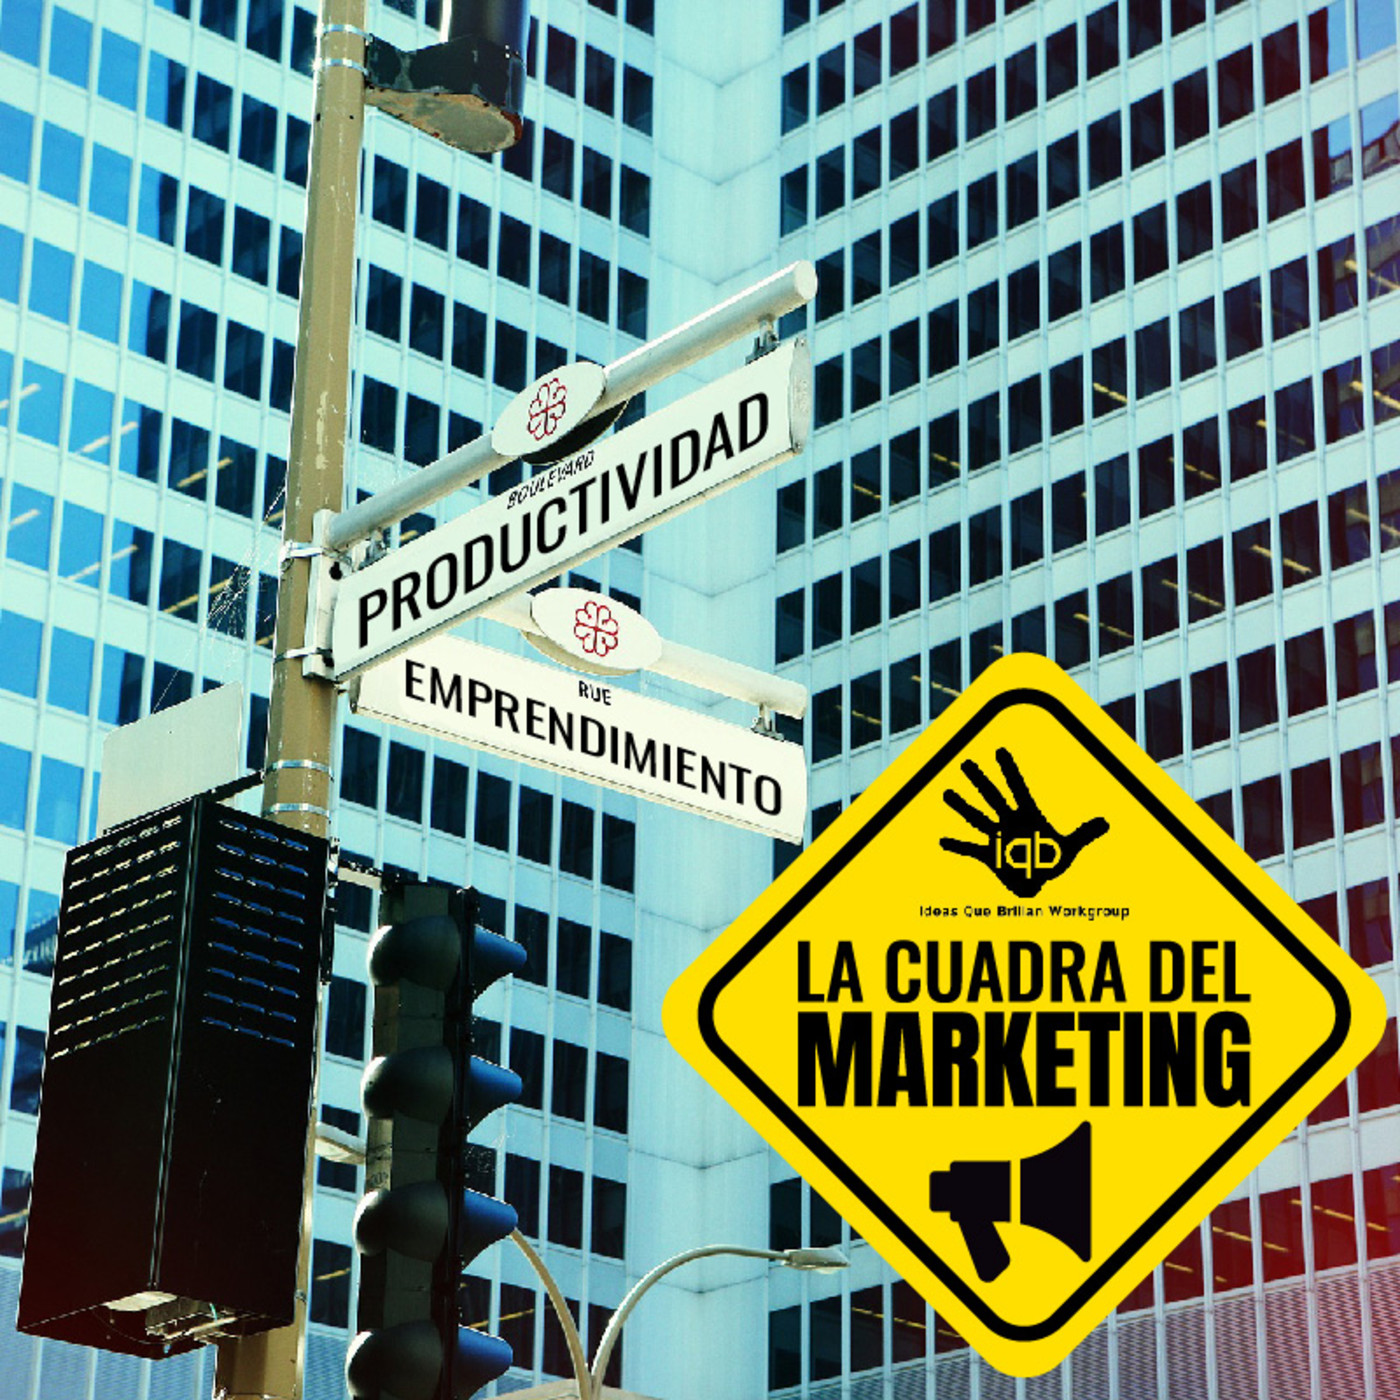 La Cuadra del Marketing - EP01 - Marca y Branding